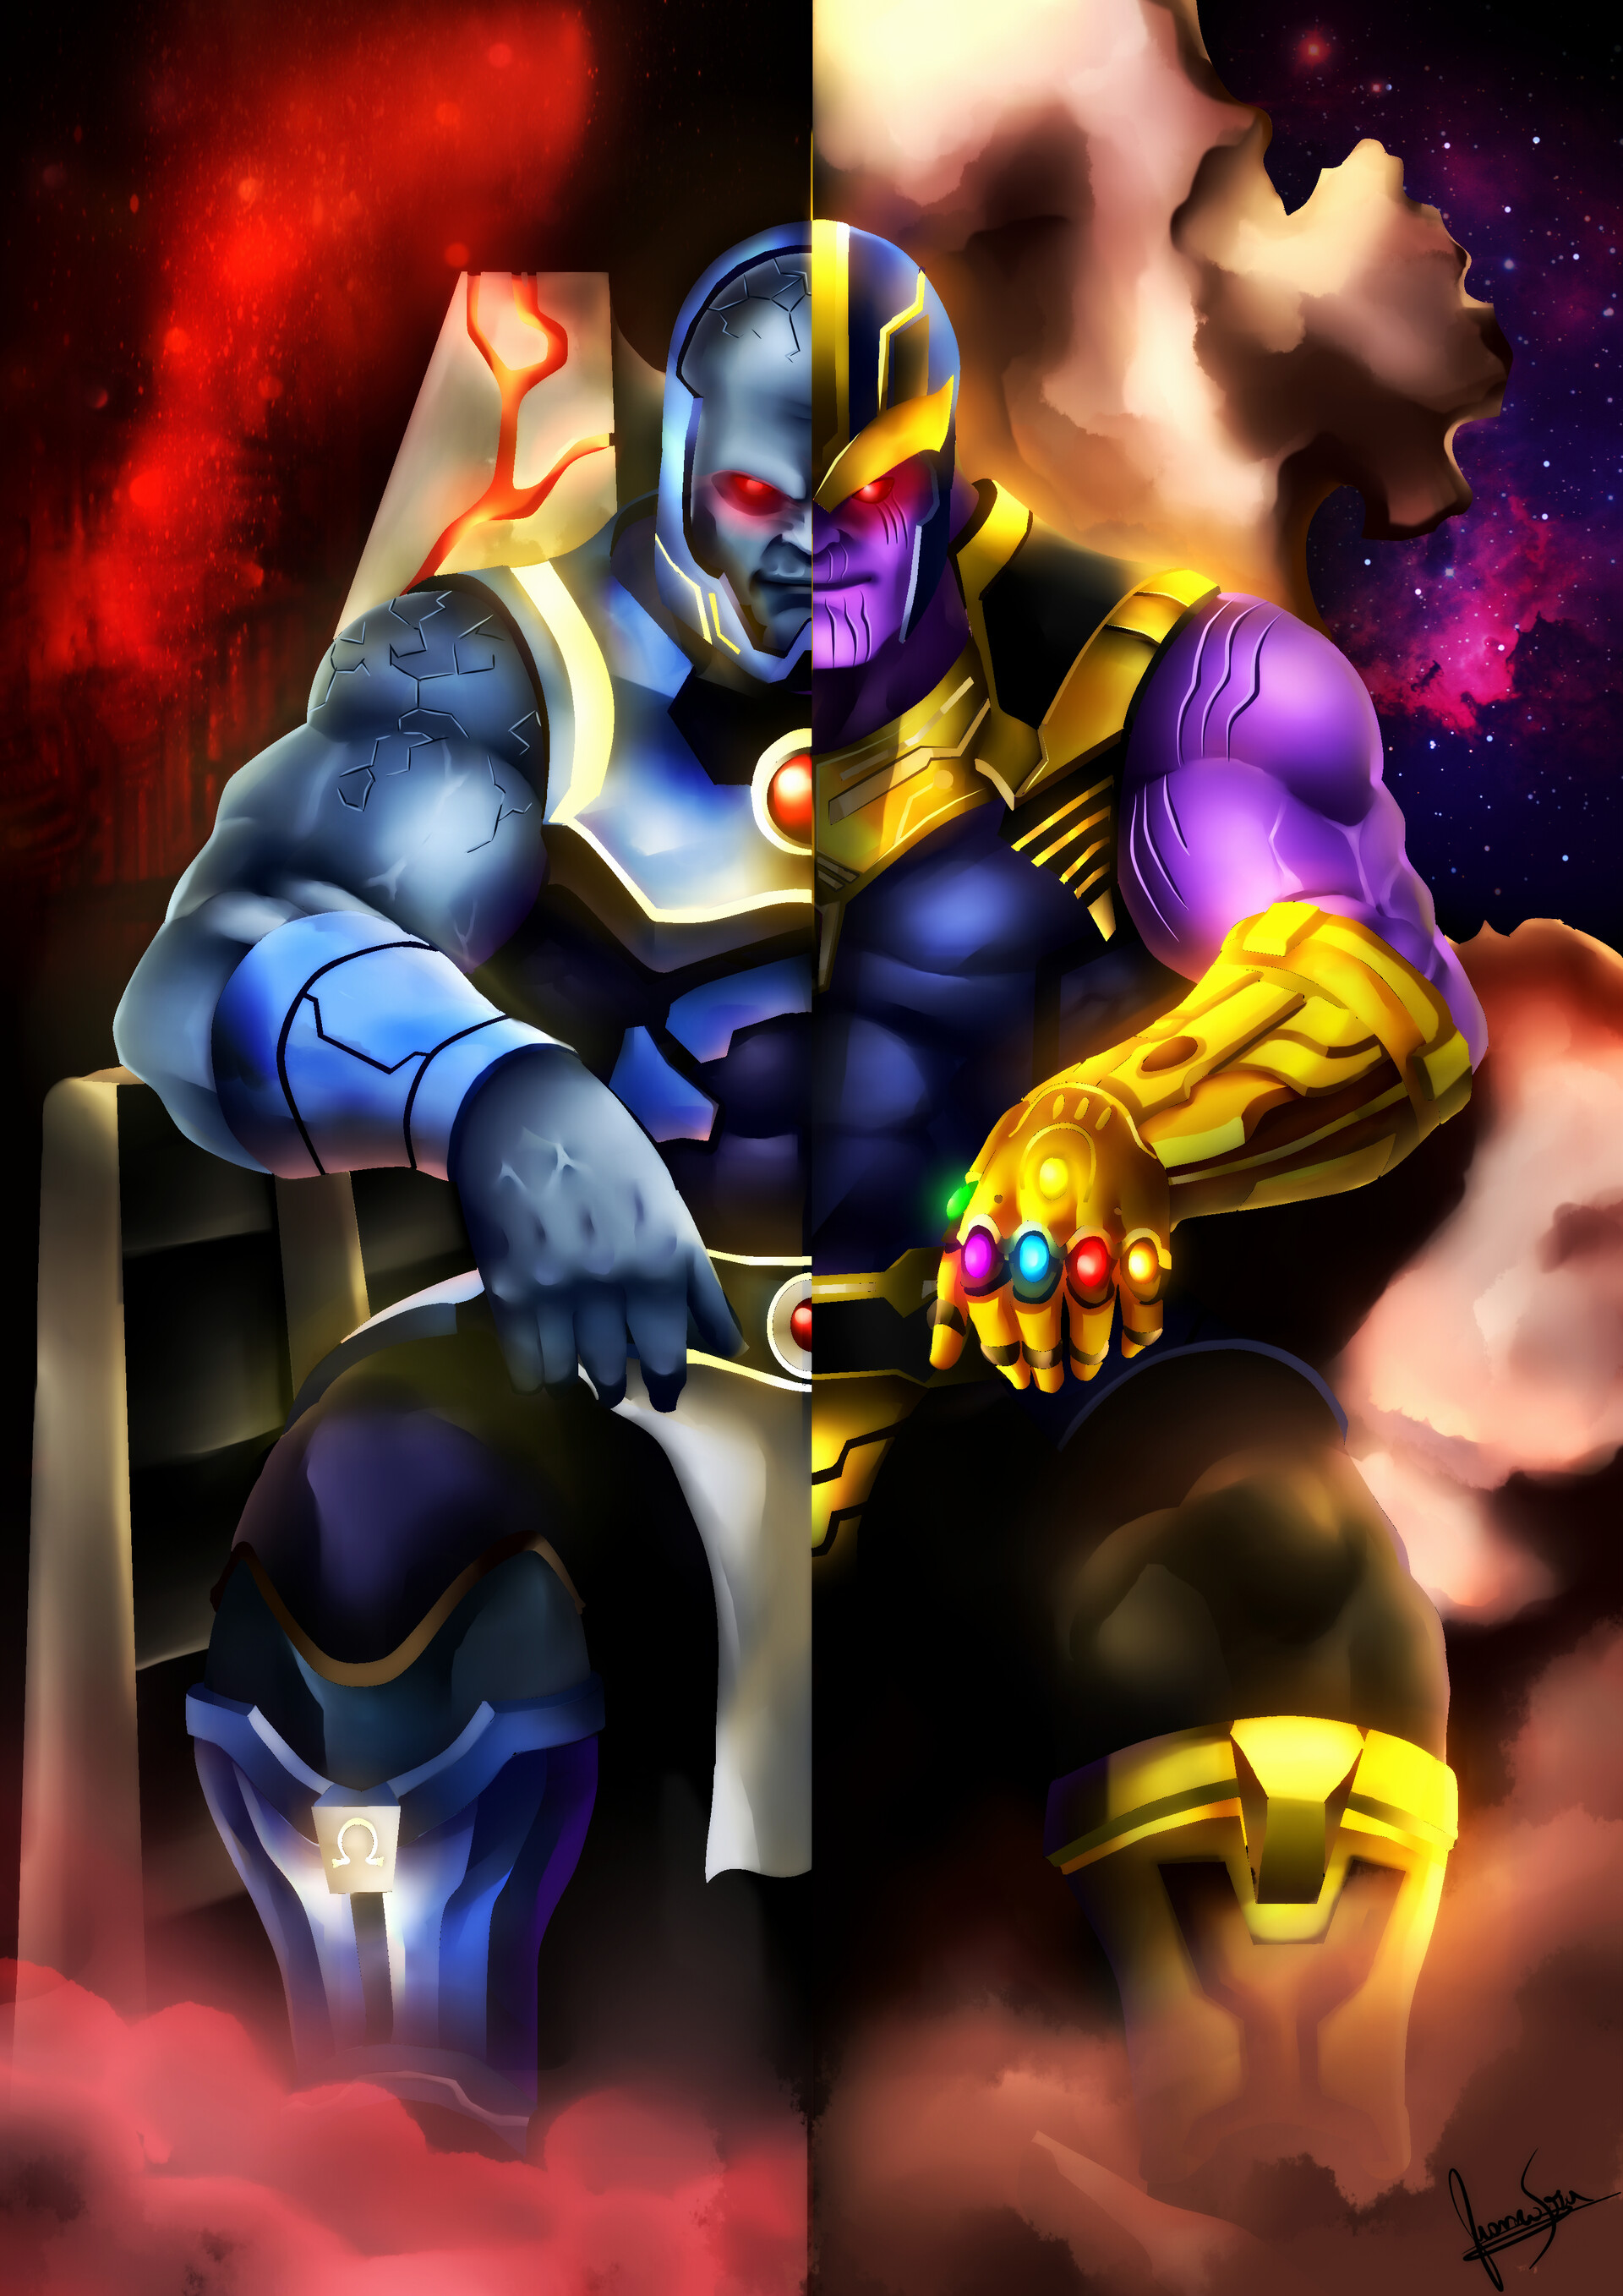 Fr4an_✎ - Darkseid Vs Thanos... DC Vs Marvel